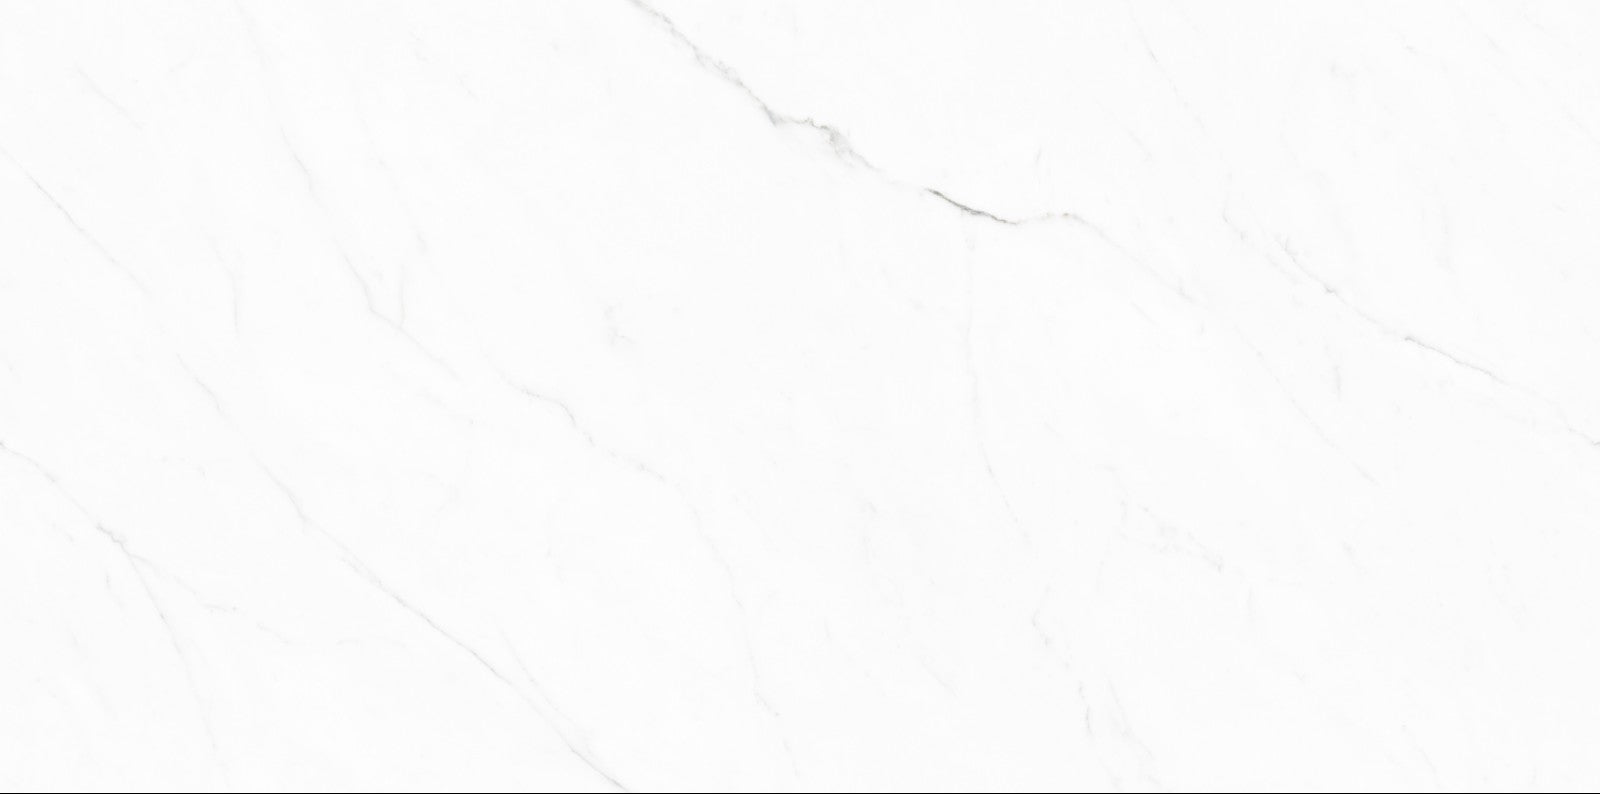 中國佛山瓷磚 China Foshan Marble Tiles Glossy 大理石瓷磚 連紋瓷磚 地磚 墻磚 釉面磚 亮光面 白水晶TC126308 60×120cm